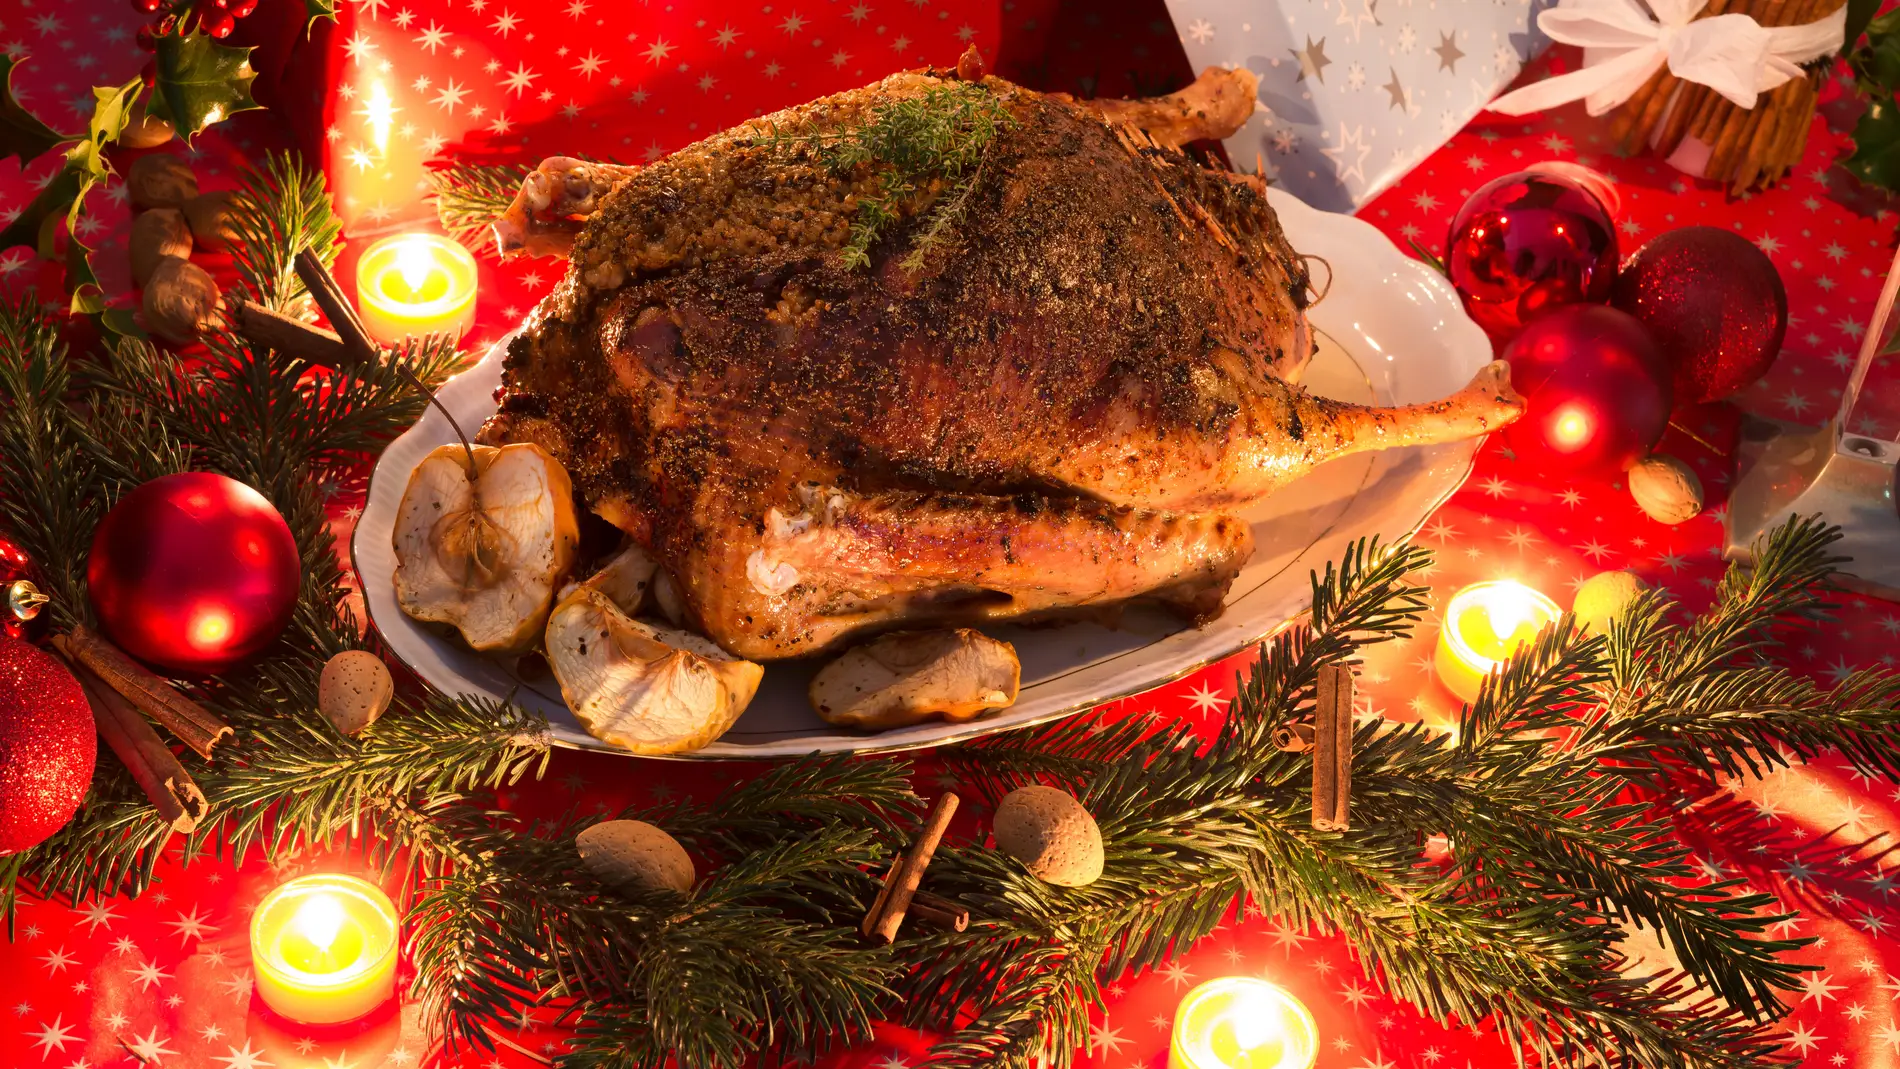 La comida indispensable que debes, sí o sí, comprar antes de Navidad: ahorrarás un 5.27% de media. 